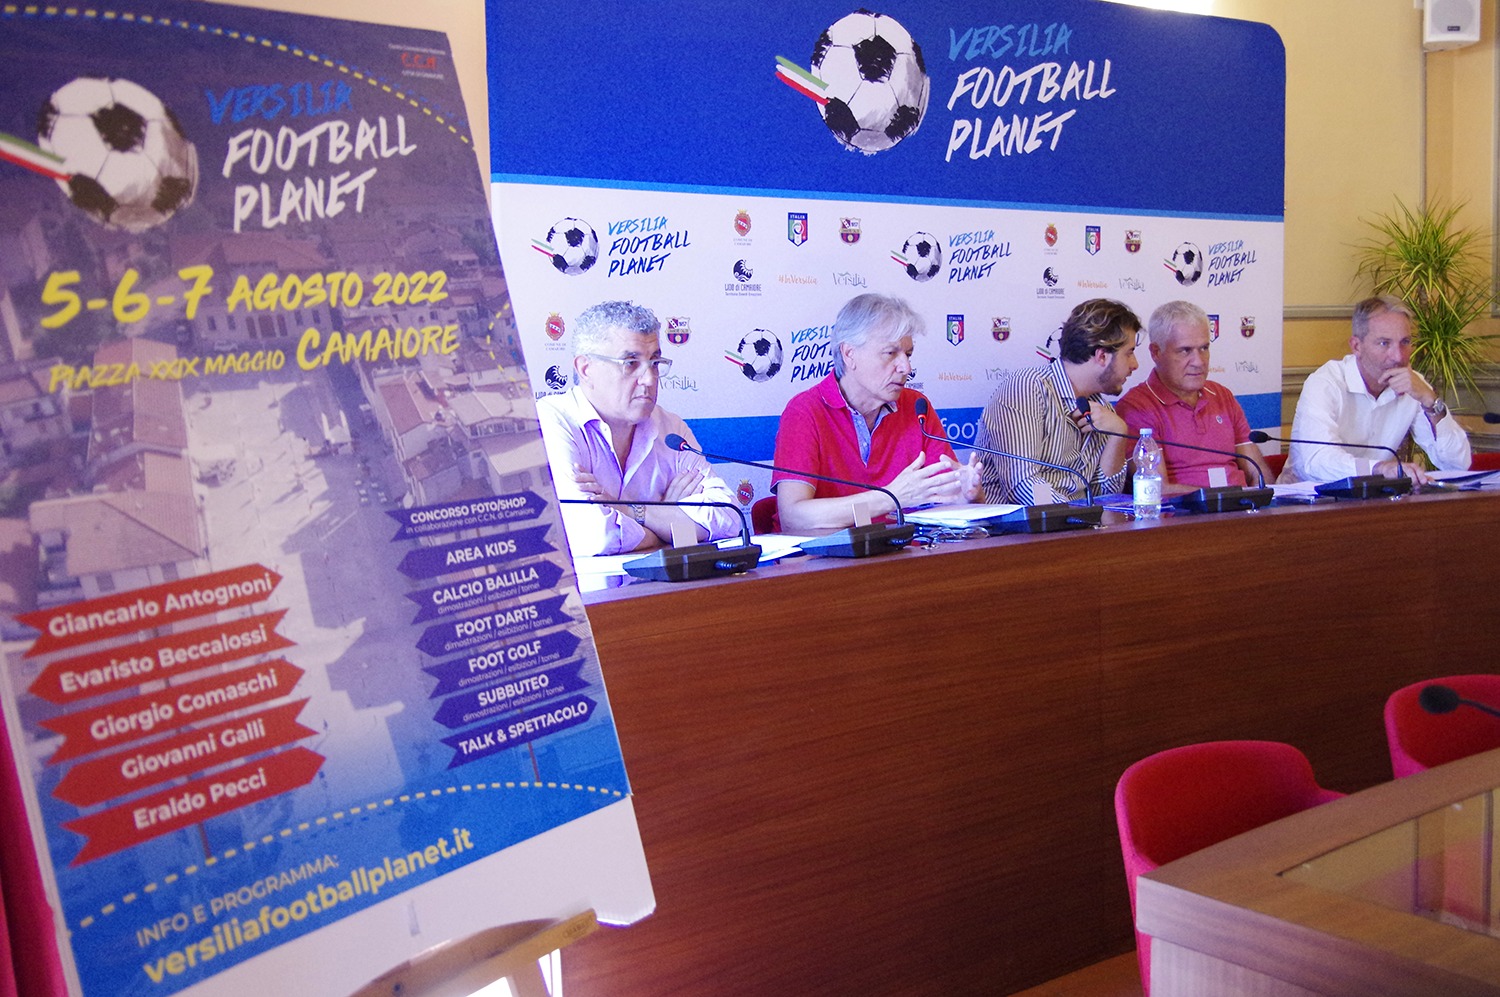 Presentata la 4° edizione del Versilia Football Planet: la manifestazione a tema calcistico torna dal 5 al 7 agosto nella nuova Piazza XXIX Maggio